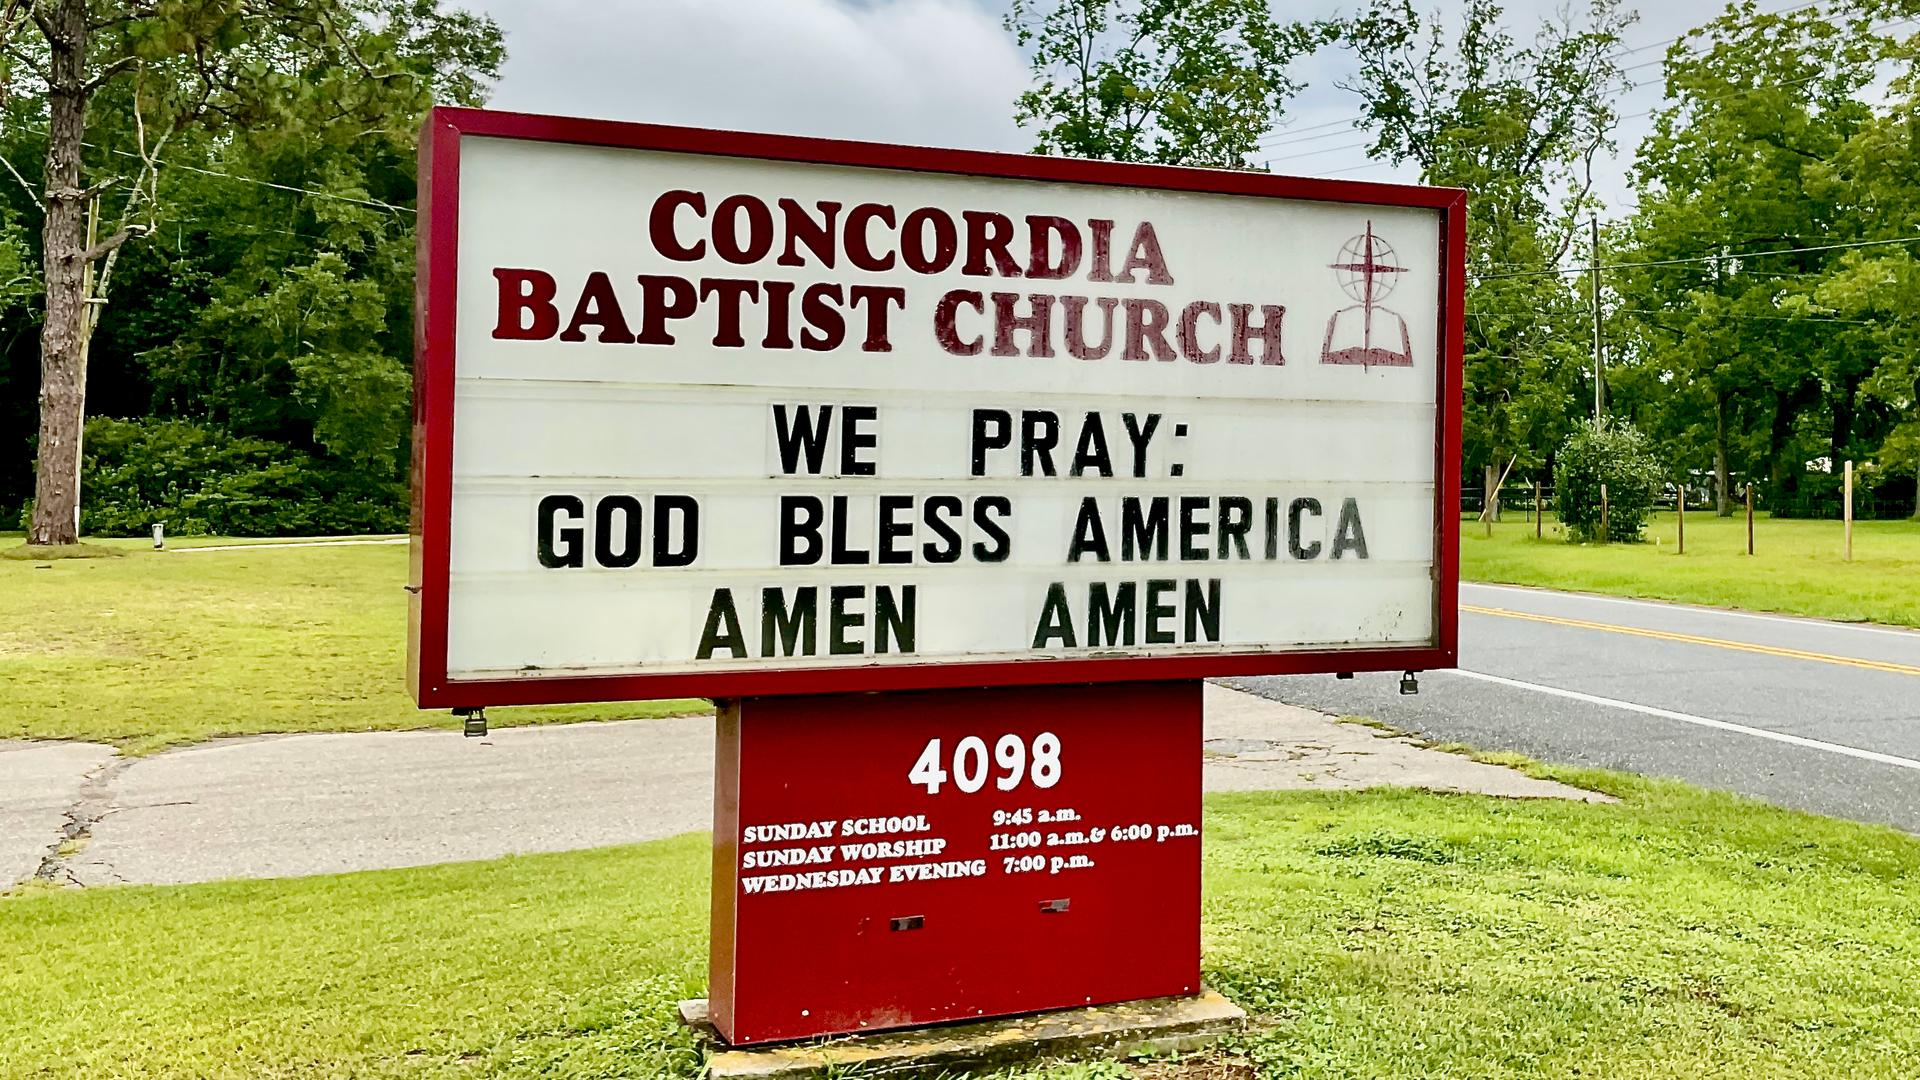 Hinweisschild zur Concordia Baptist Church in Florida.